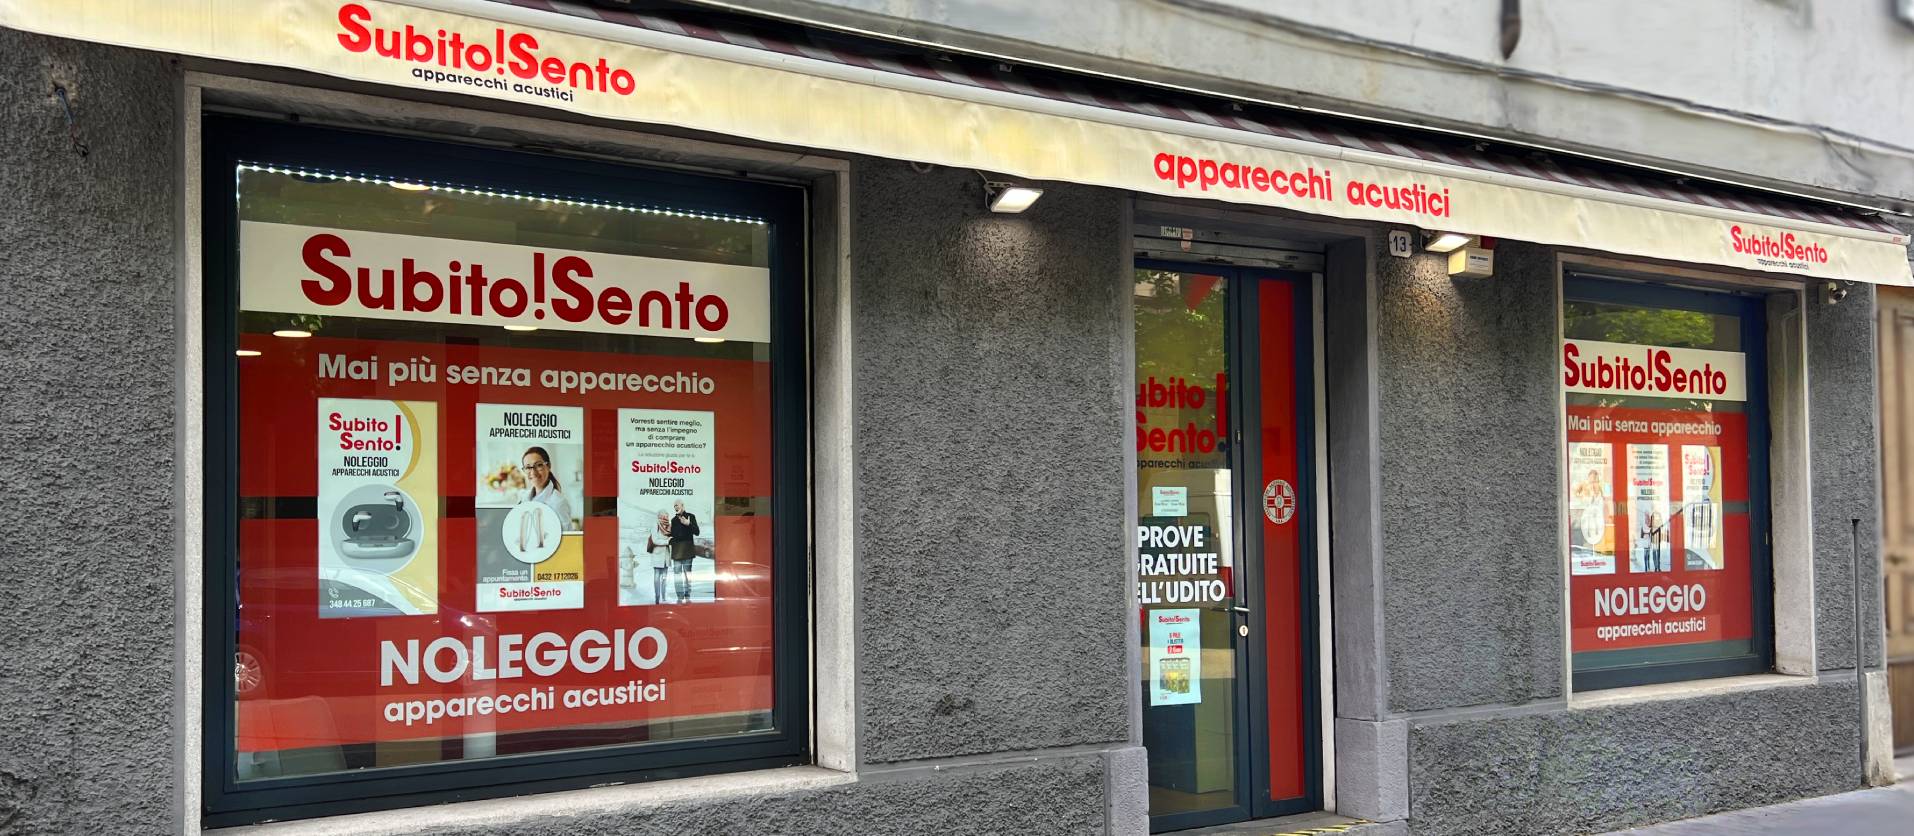 Apparecchi Acustici - Centro Subito Sento - Via Francesco Crispi, 13,Udine